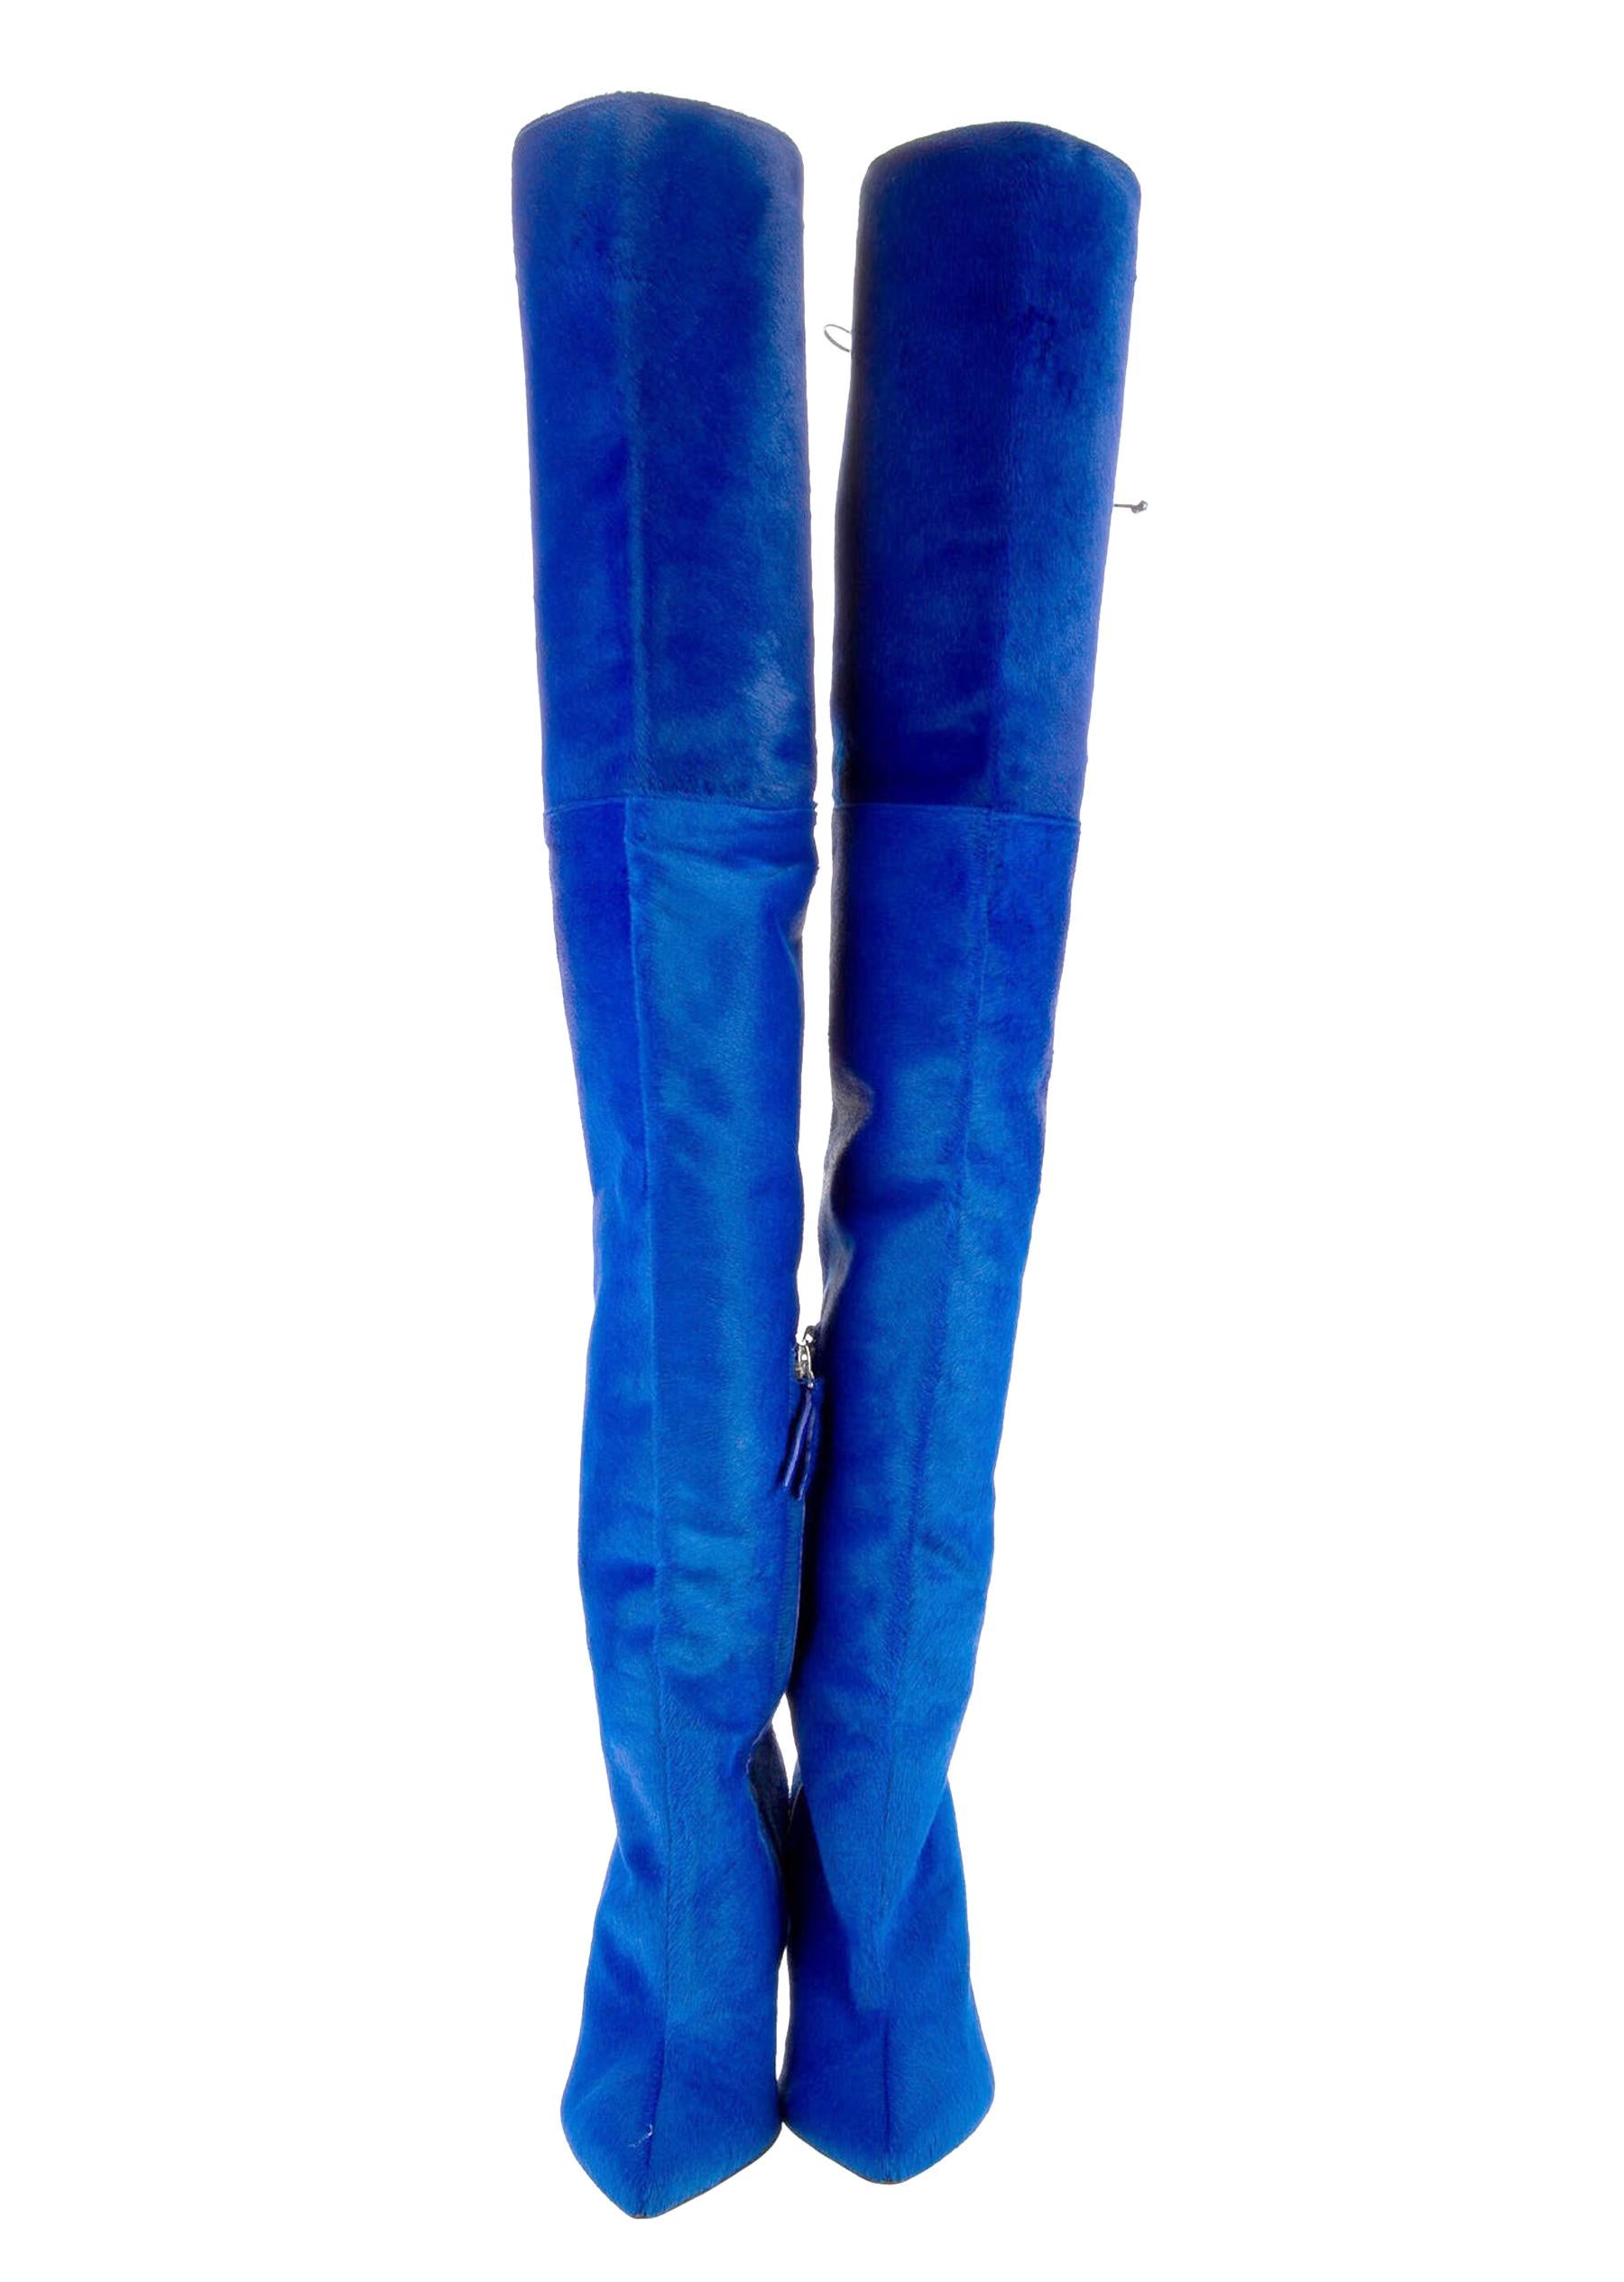 Neu Oscar De La Renta Blau über das Knie Stiefel
F/W 2017 Laufsteg-Kollektion
Designer Größe 38 - US 8
Kalbshaar, verstellbarer Schnürverschluss mit Lederkordel, vollständig mit blauem Leder gefüttert, teilweise mit Reißverschluss.
Höhe - 30 Zoll